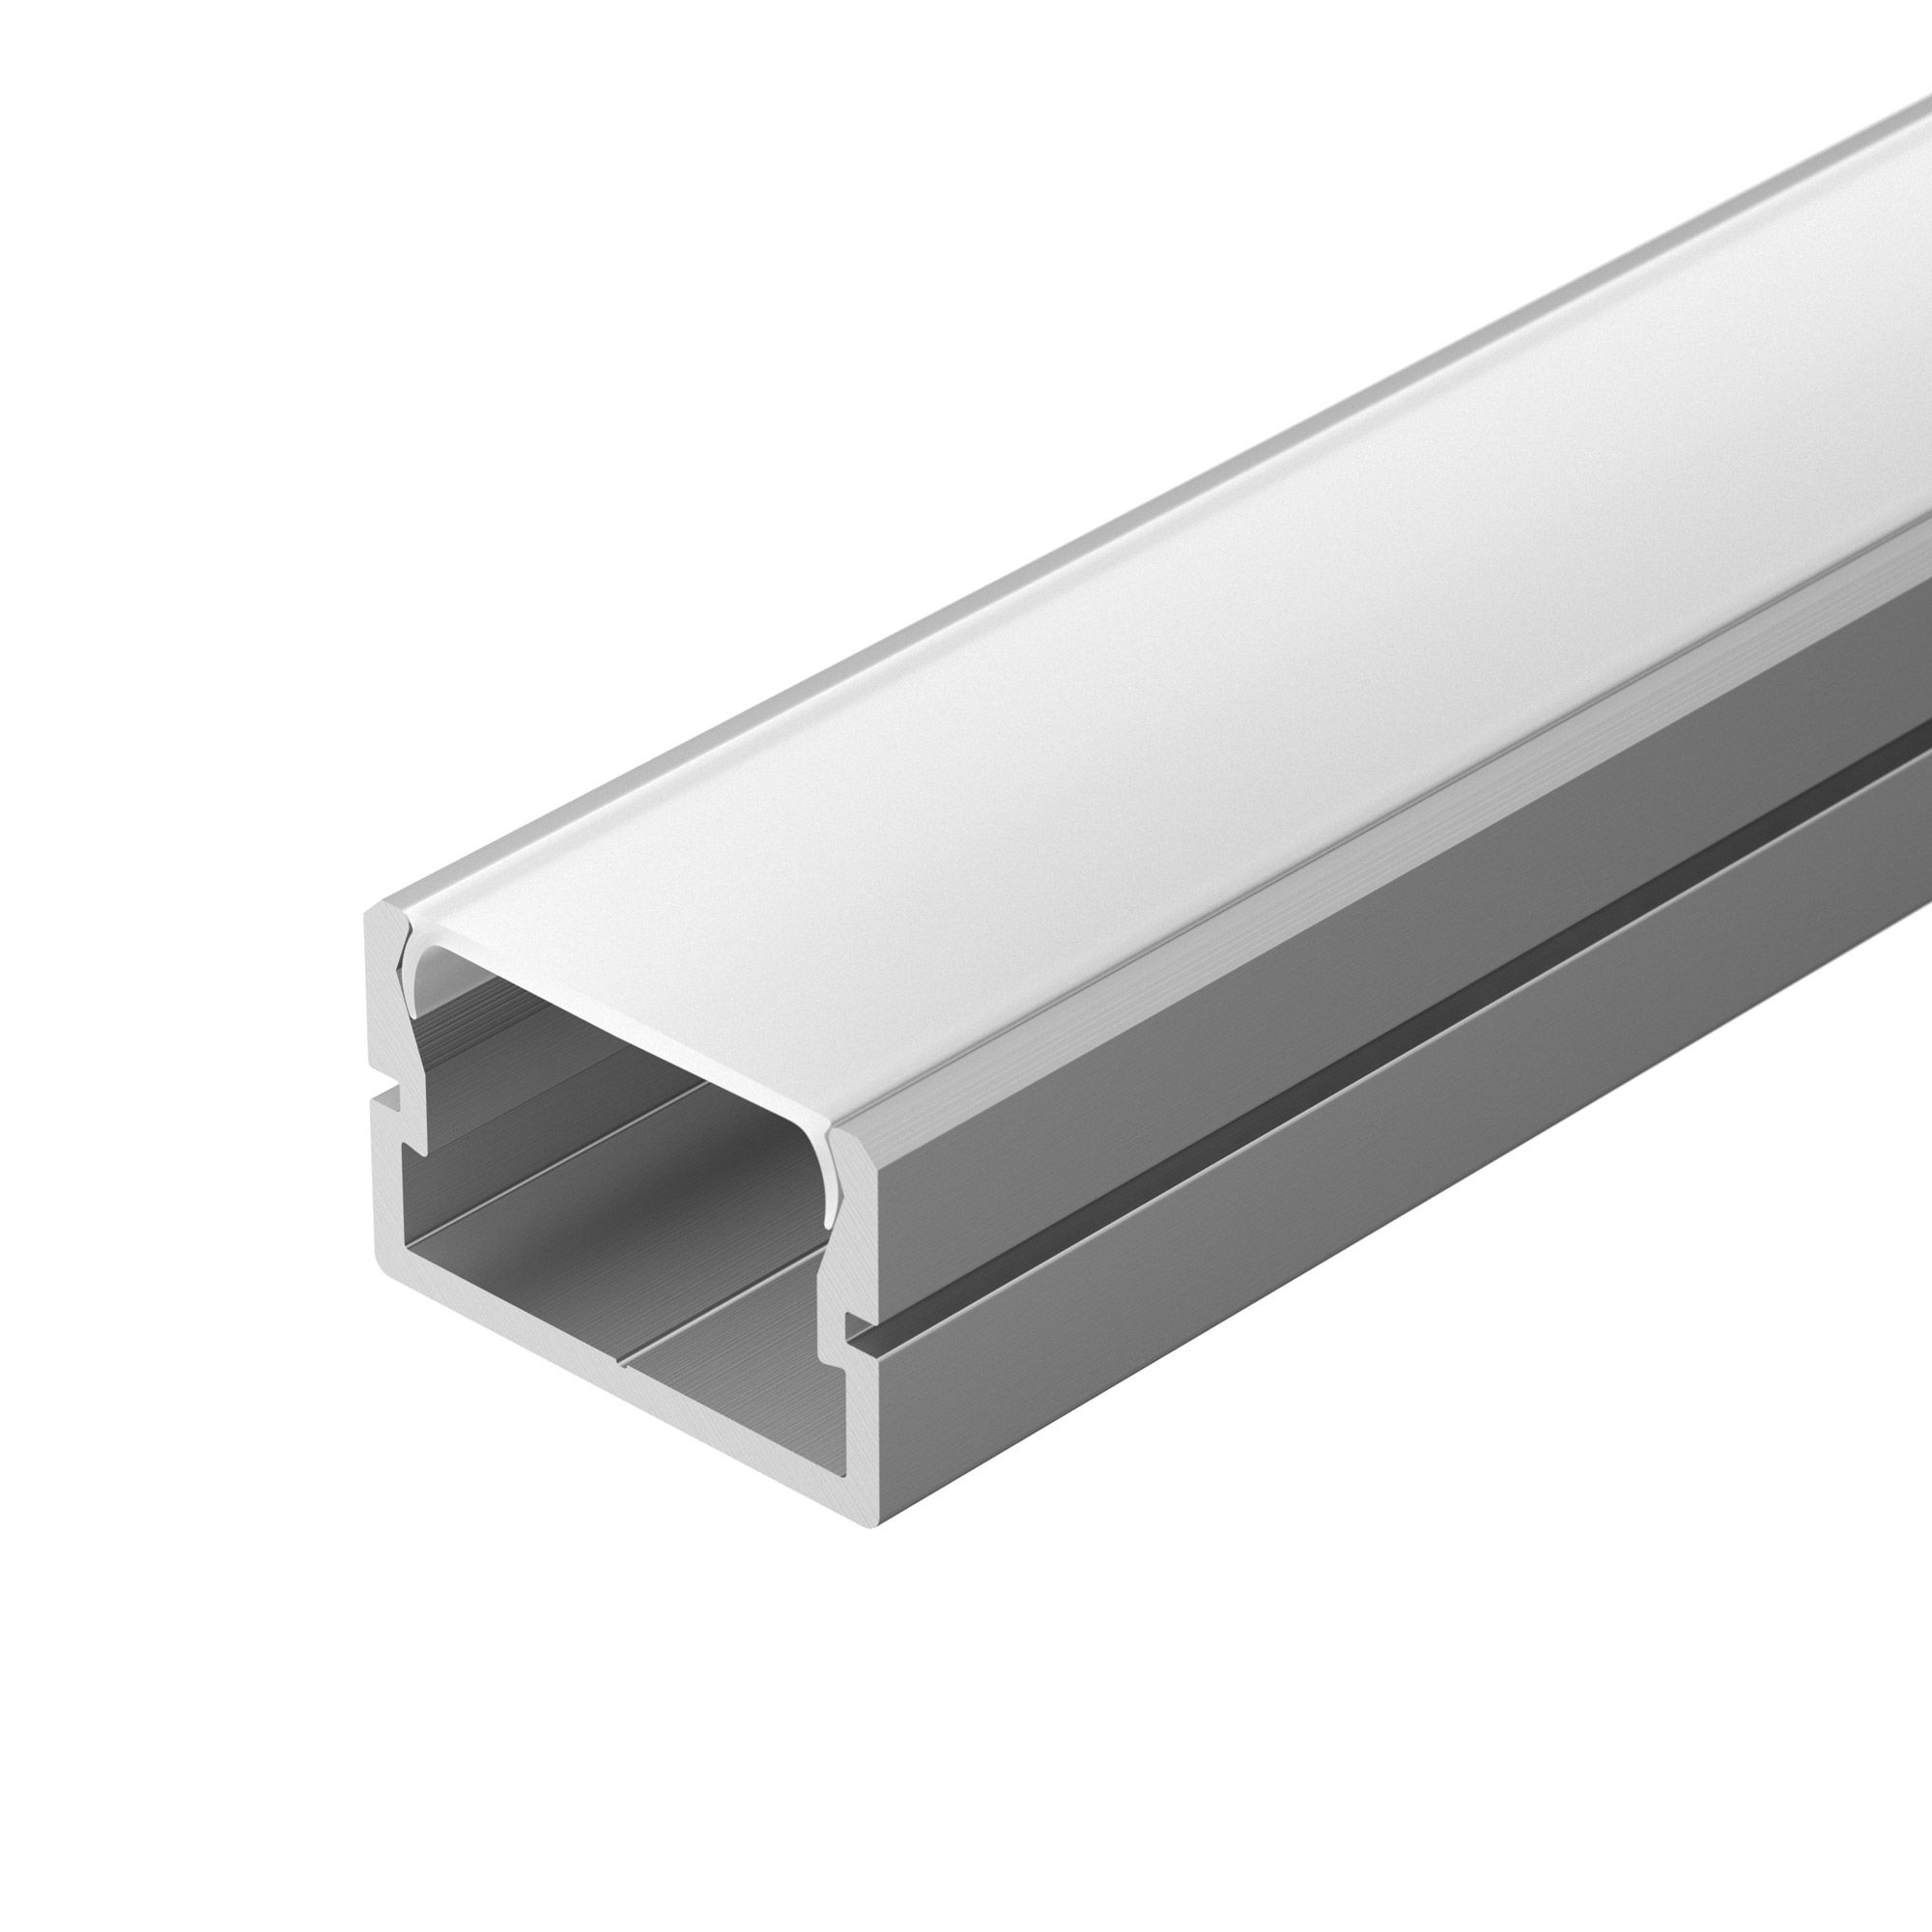 Профиль SILER-3000 ANOD (Arlight, Алюминий) профиль для светодиодной ленты накладной алюминиевый lc lp 3535 2 anod